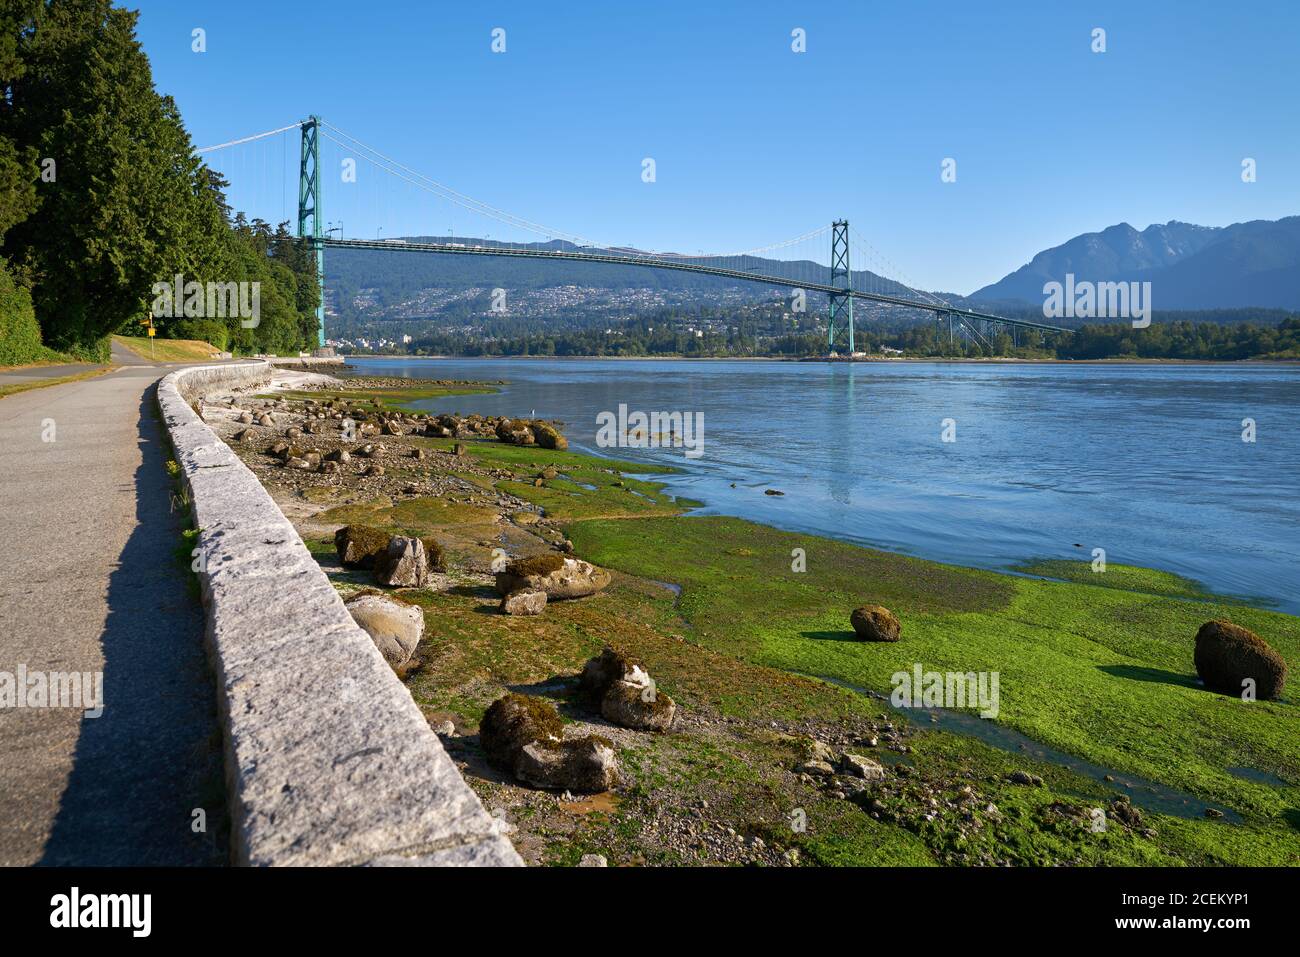 Stanley Park Seawall Lion’s Gate Bridge. Die Ufermauer des Stanley Parks mit Blick auf die Lions Gate Bridge. Vancouver, British Columbia, Kanada. Stockfoto